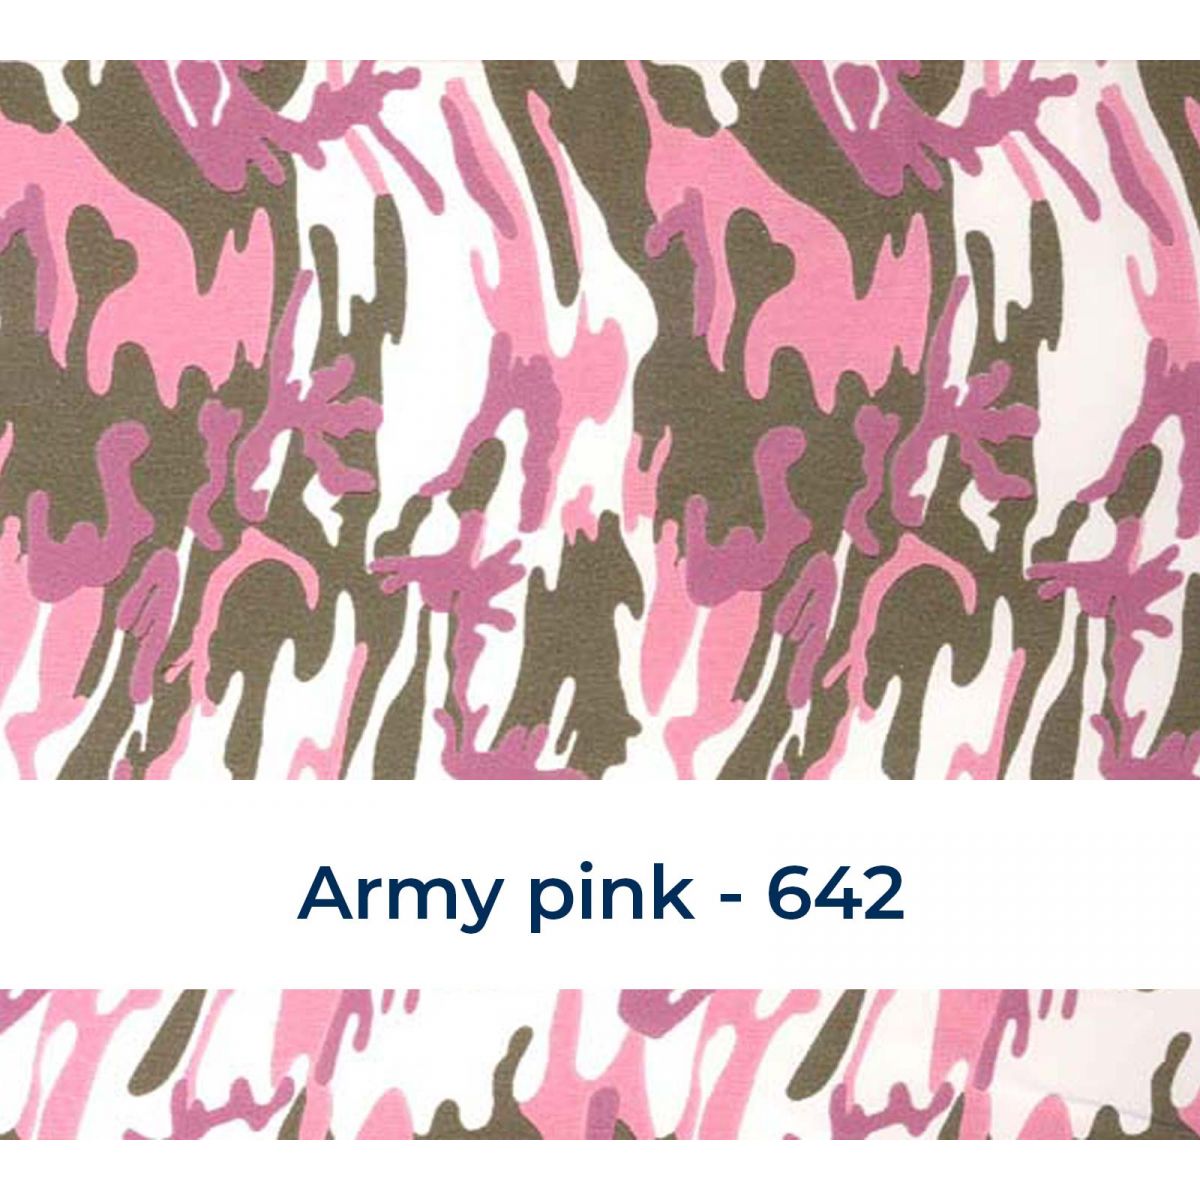 Fashion Army pink 642